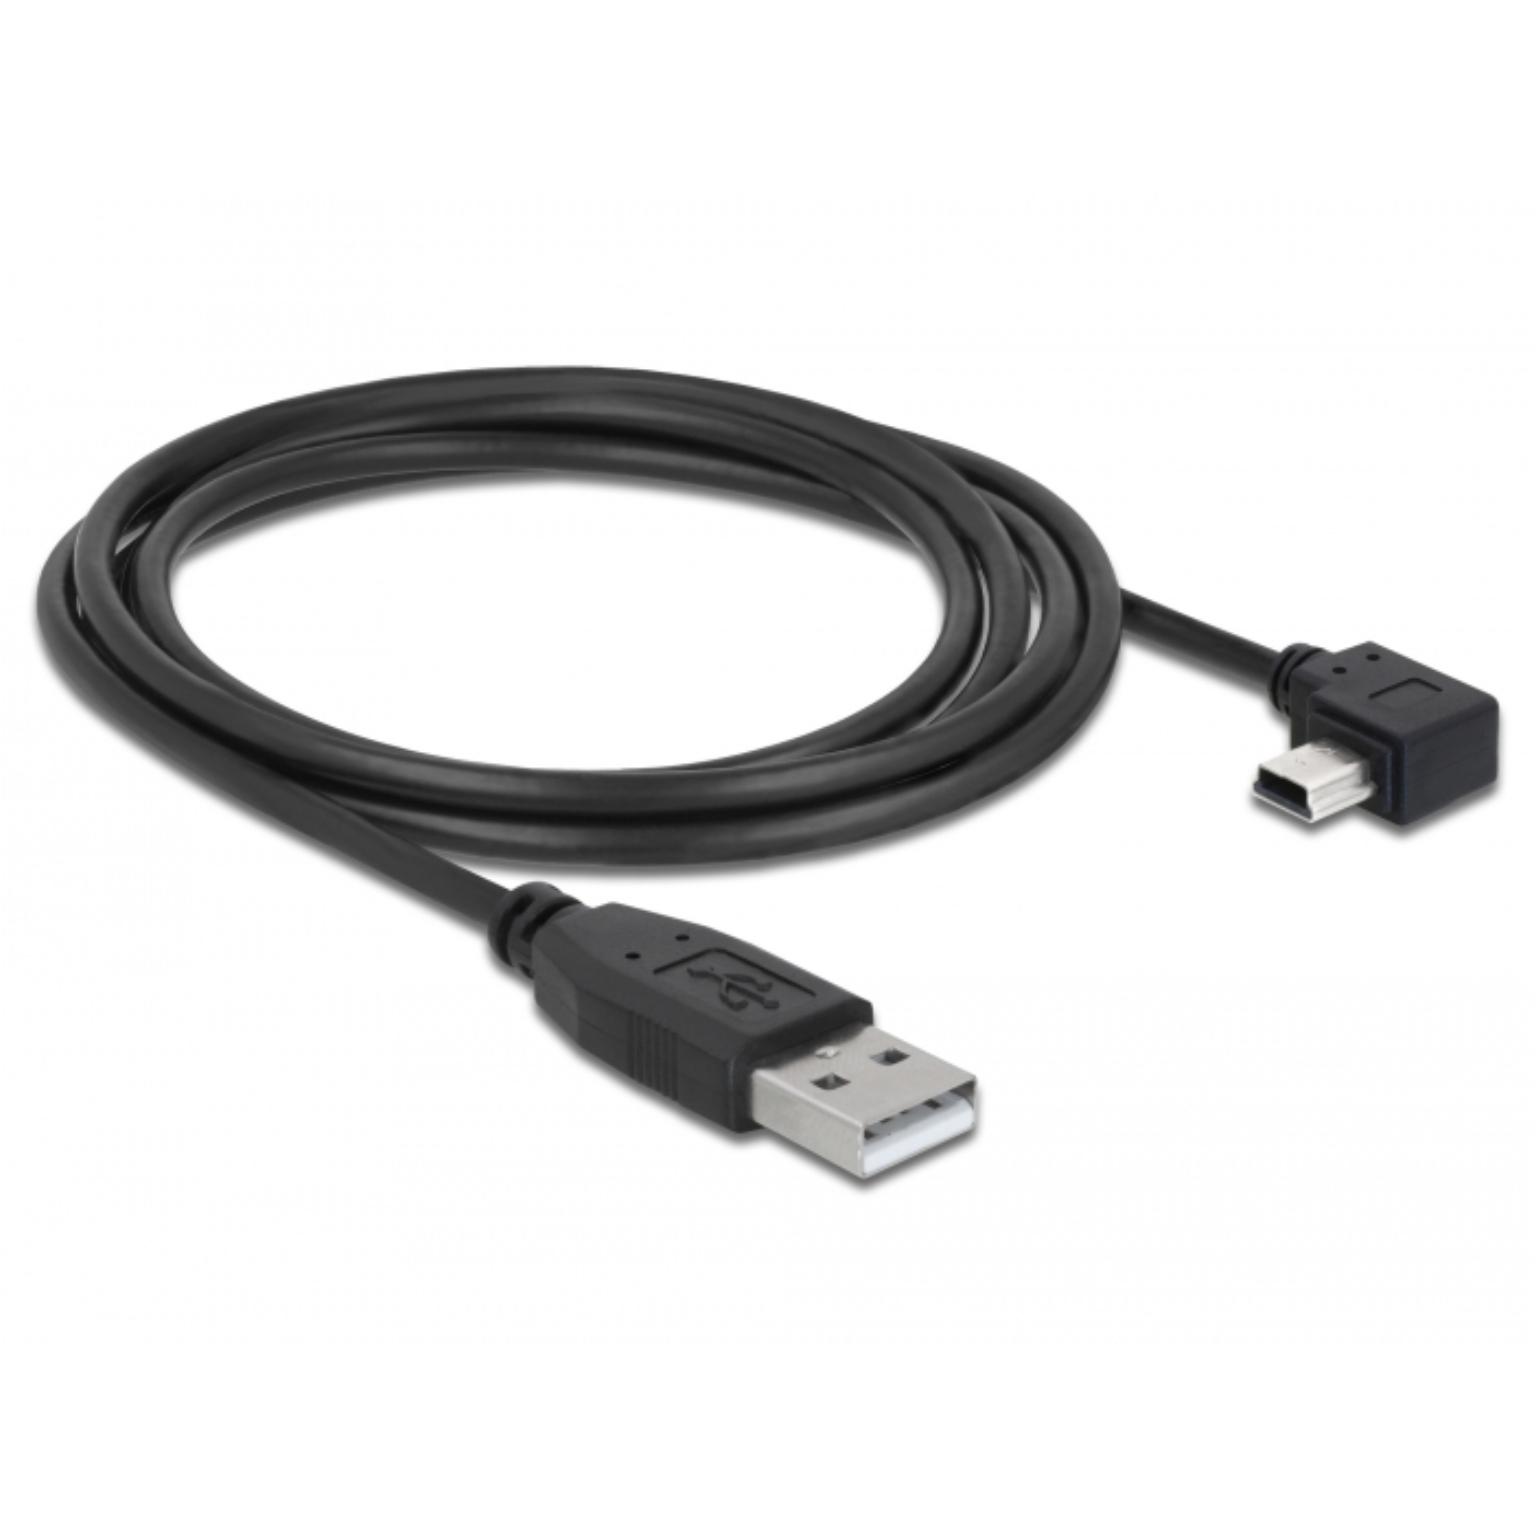 escaleren in plaats daarvan Gloed Mini USB 2.0 Kabel - Haaks - Mini USB 2.0 kabel, Connector 1: USB A male,  Connector 2: 5p mini USB B male, Haaks, 2 meter.